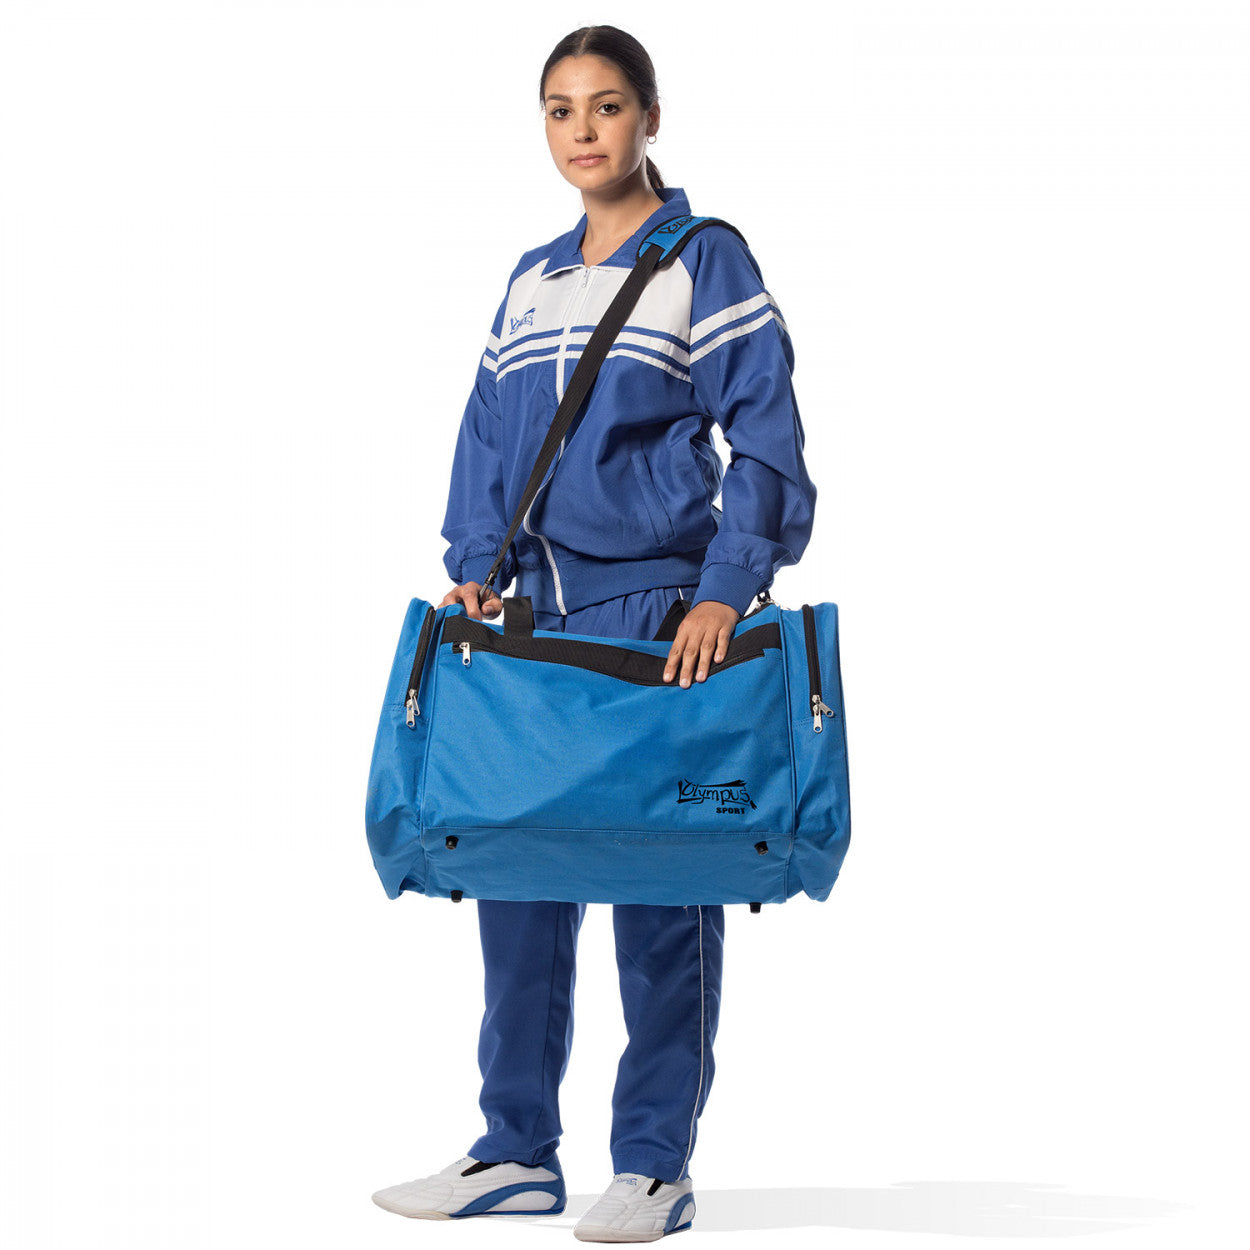 Αθλητική Τσάντα Olympus TEAM GEAR, Μπλε